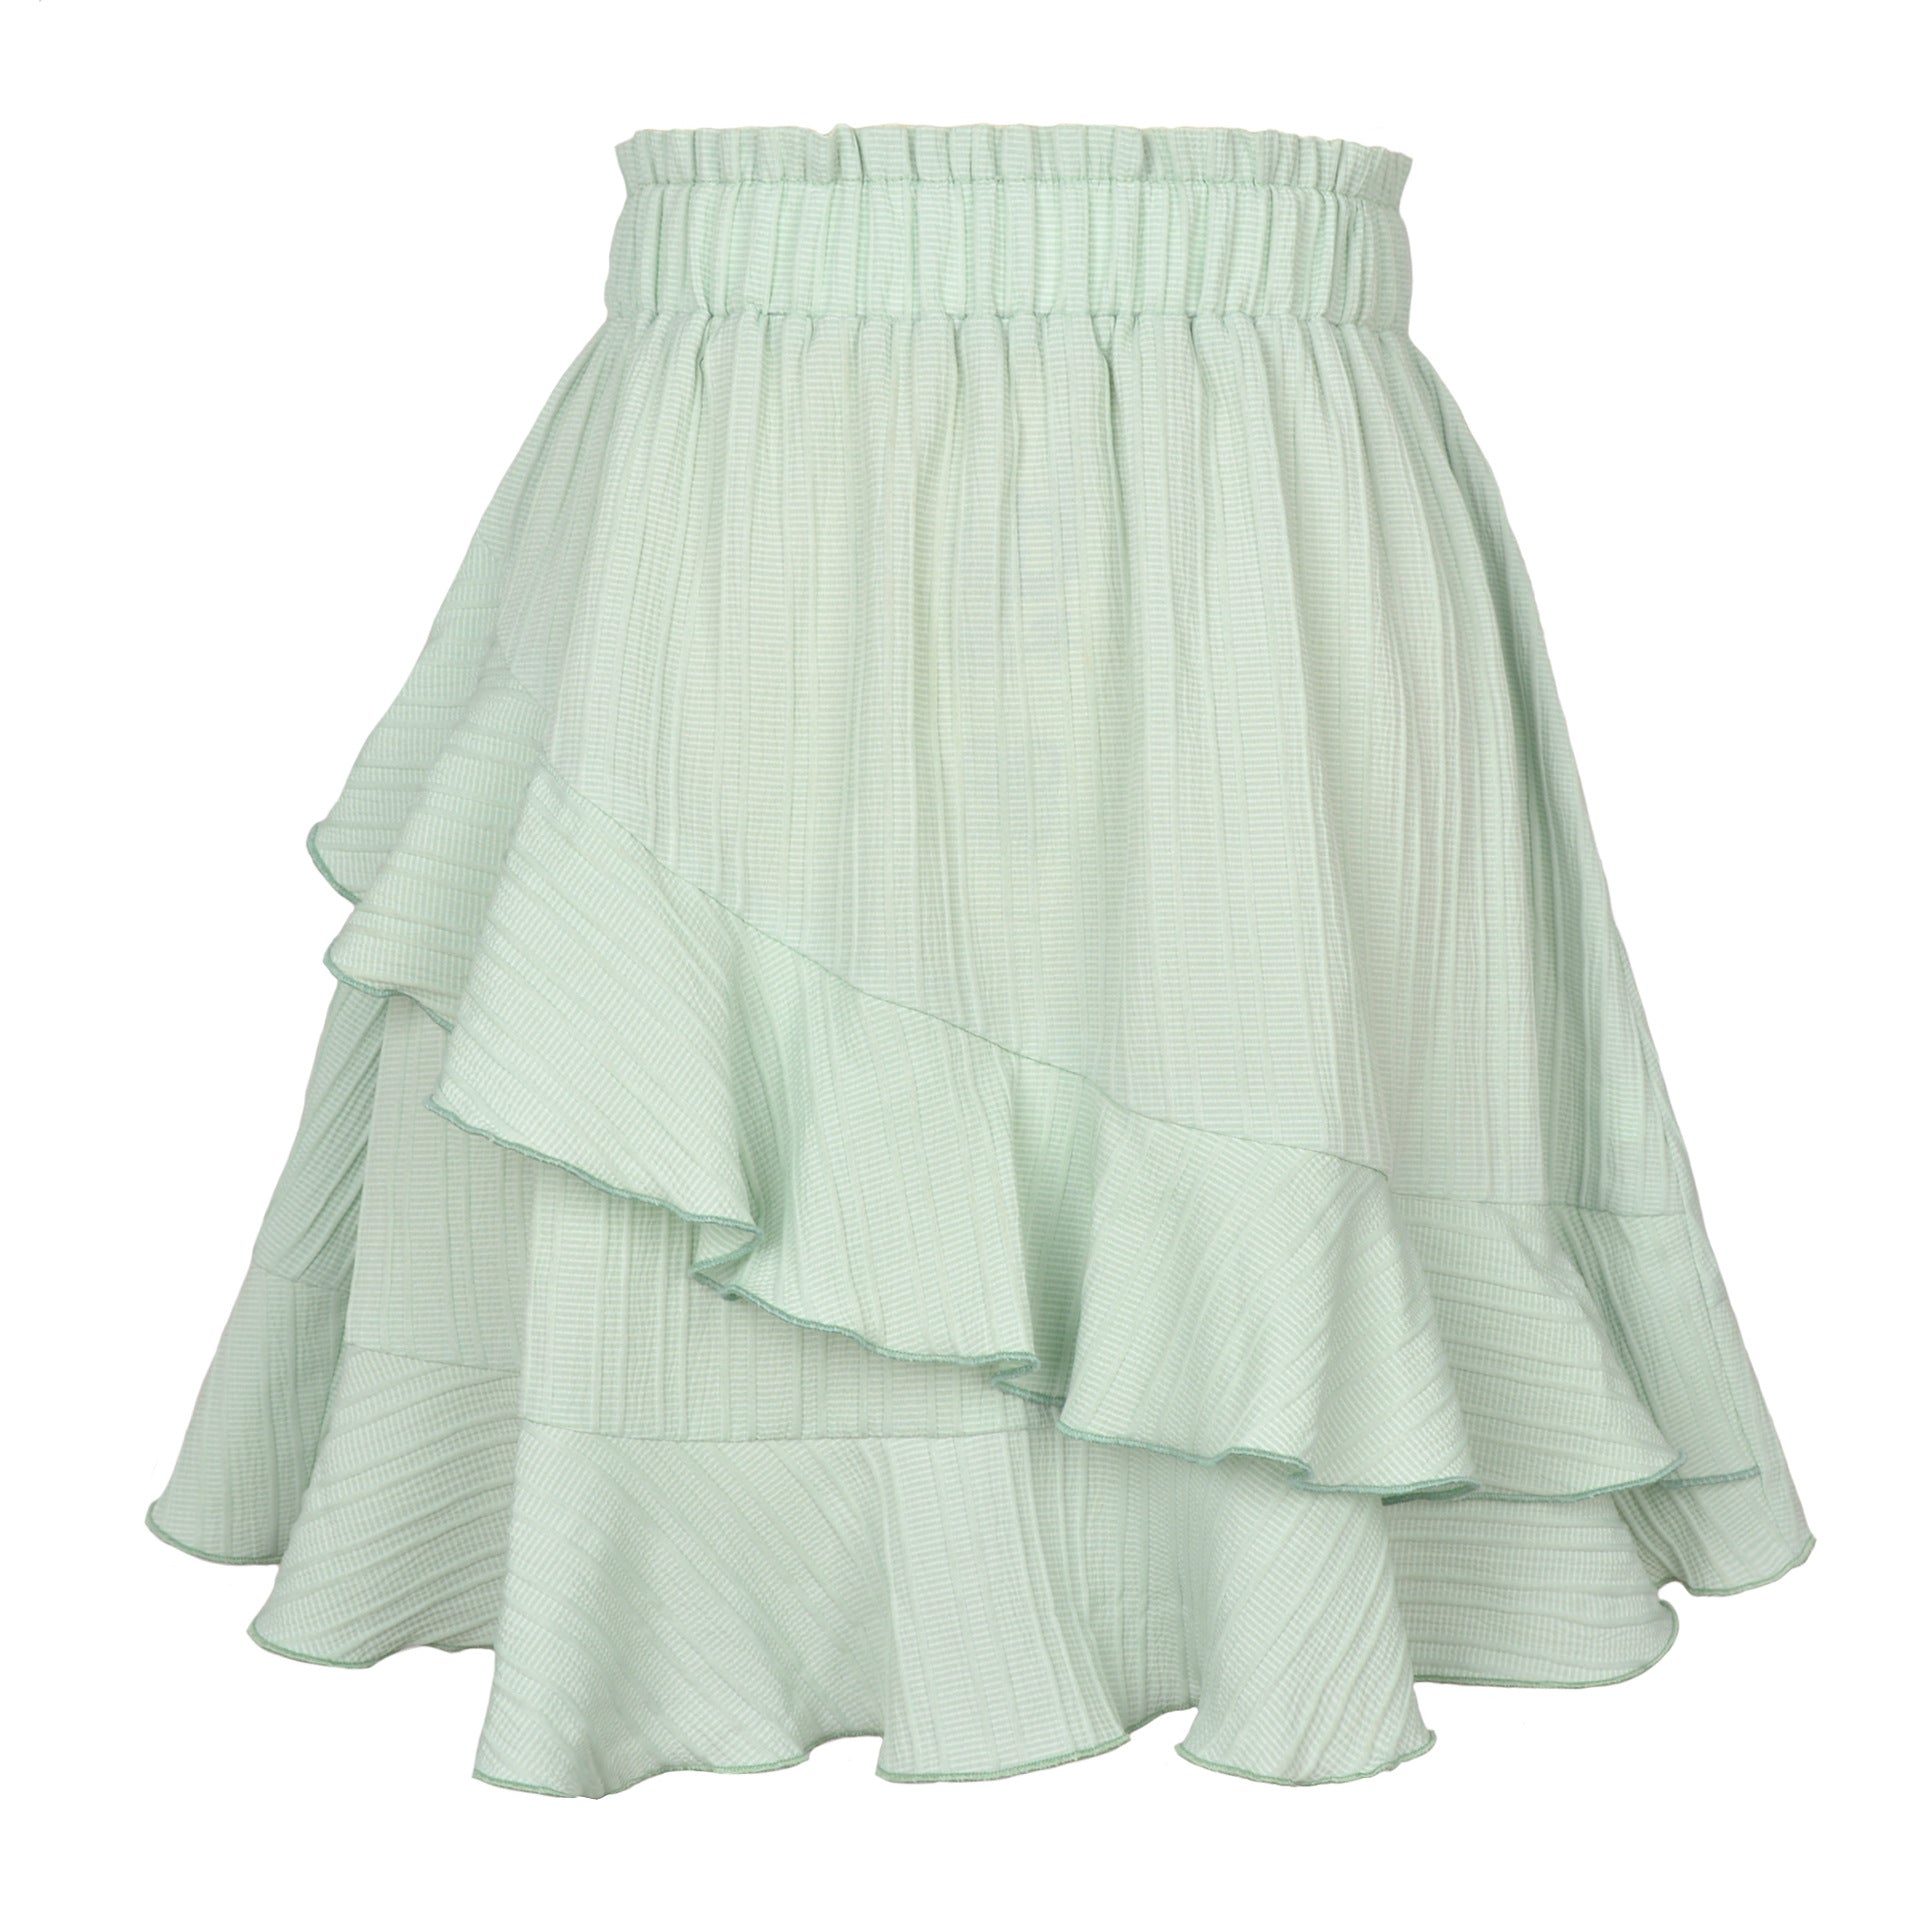 Women's Summer Ruffled High Waist Irregular Solid Skirts